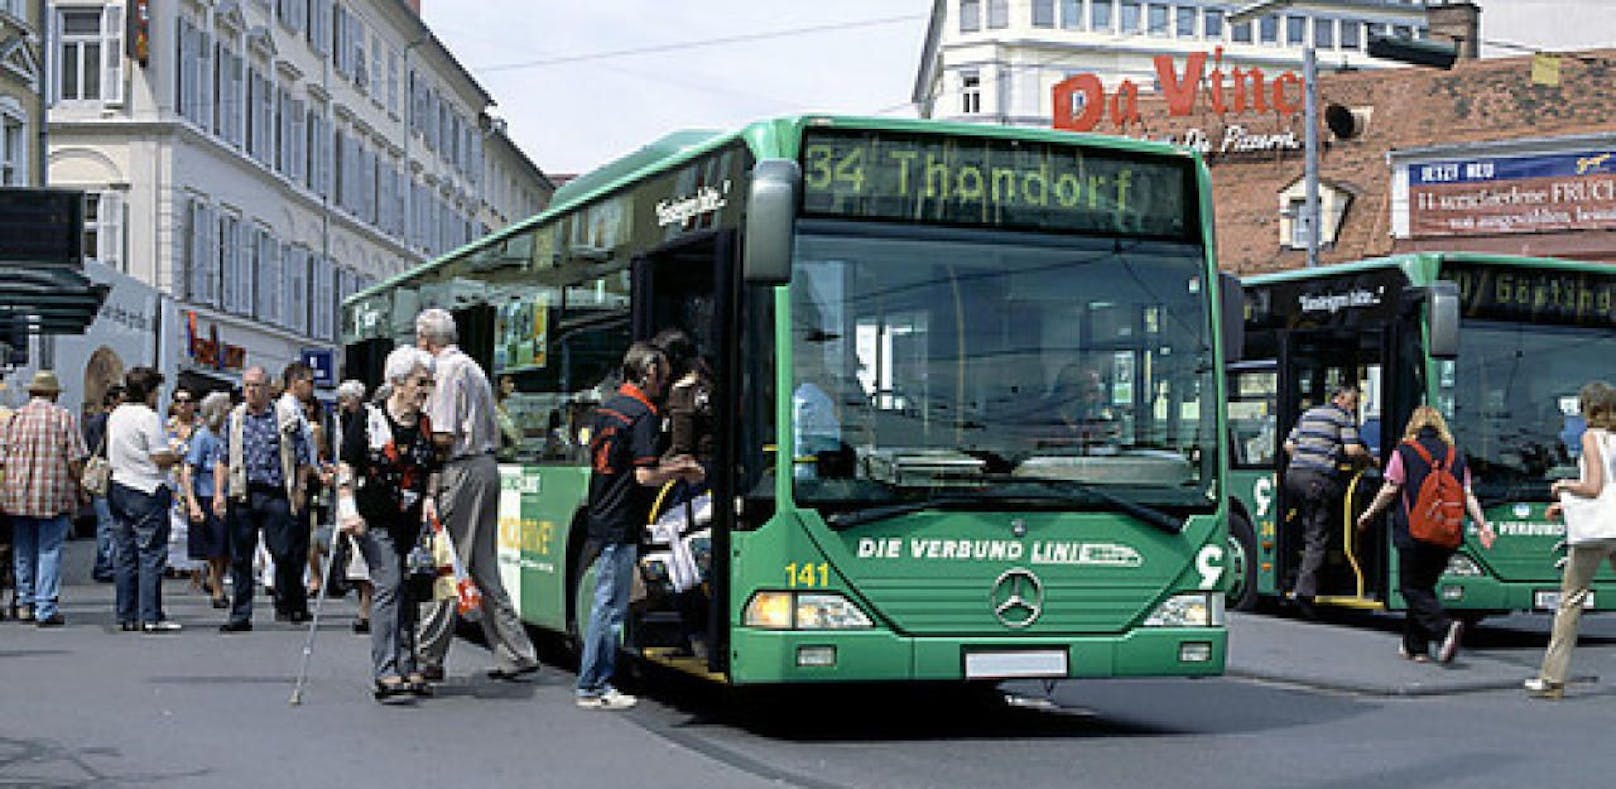 Ein Biodiesel-Bus aufgenommen in Graz. Archivbild, 2007